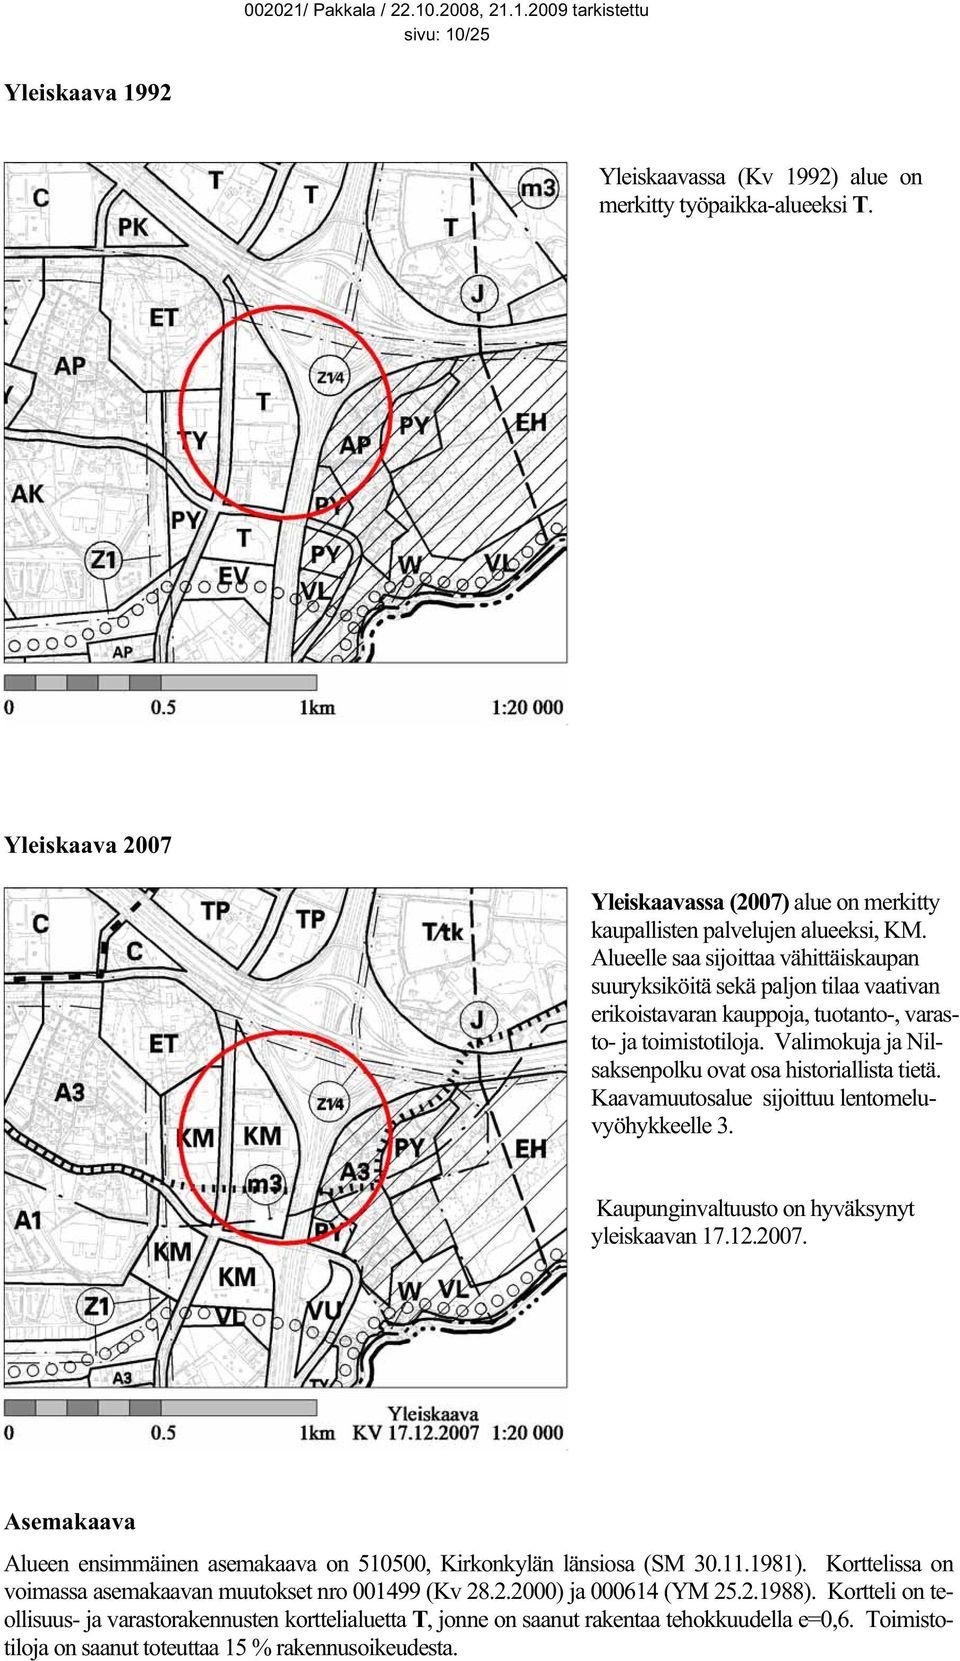 Valimokuja ja Nilsaksenpolku ovat osa historiallista tietä. Kaavamuutosalue sijoittuu lentomeluvyöhykkeelle 3. Kaupunginvaltuusto on hyväksynyt yleiskaavan 17.12.2007.